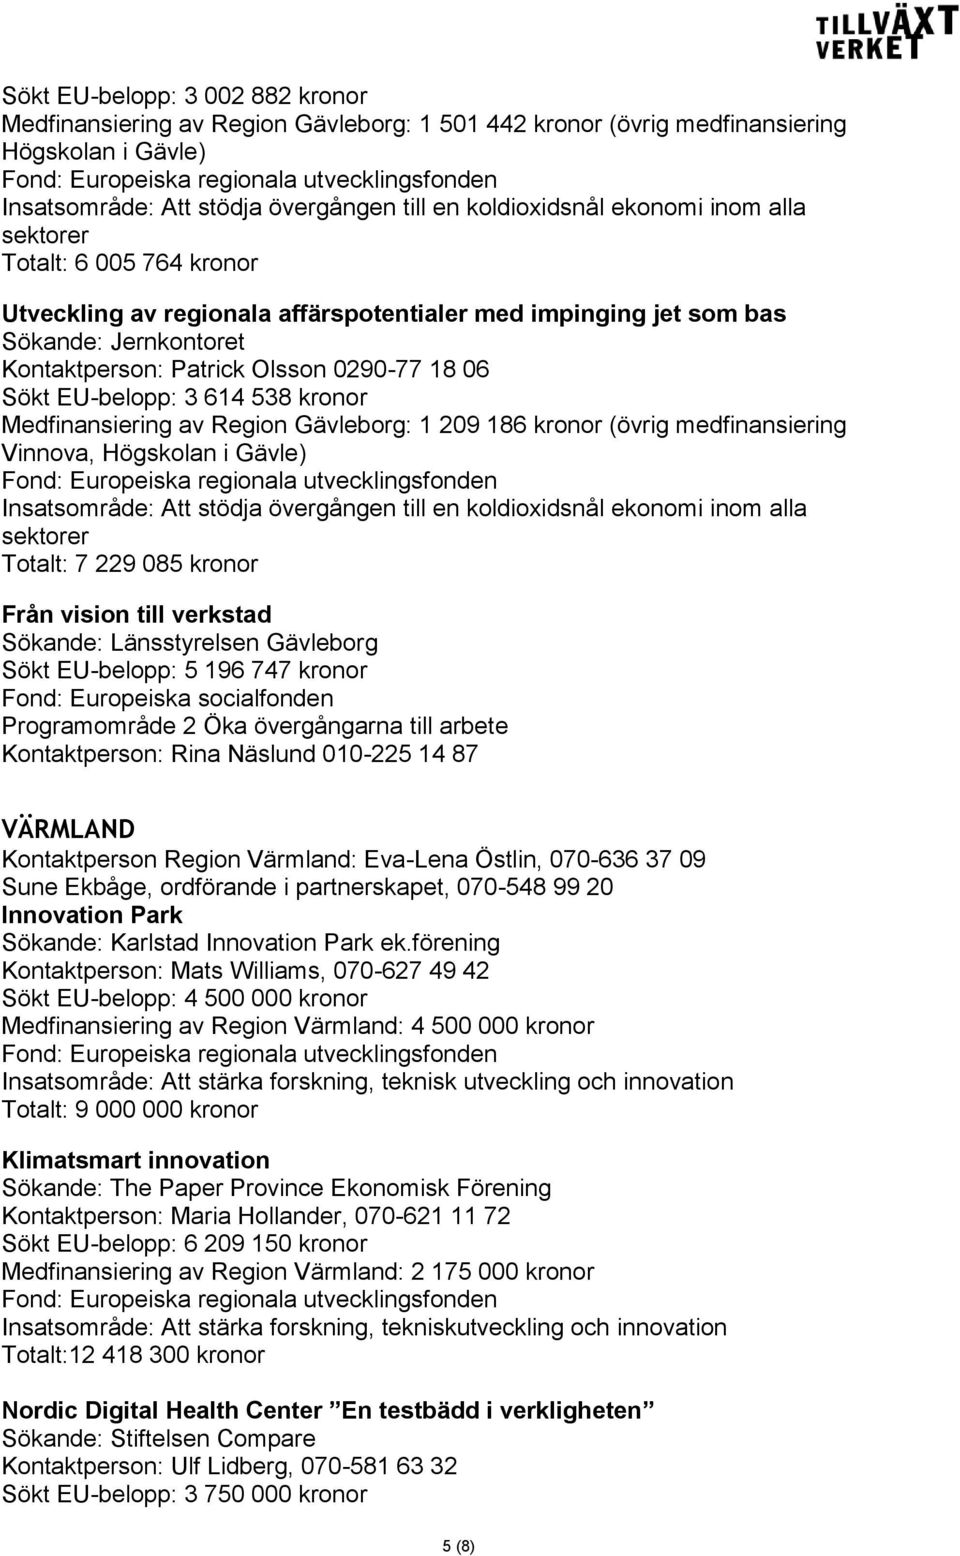 kronor Medfinansiering av Region Gävleborg: 1 209 186 kronor (övrig medfinansiering Vinnova, Högskolan i Gävle) Insatsområde: Att stödja övergången till en koldioxidsnål ekonomi inom alla sektorer